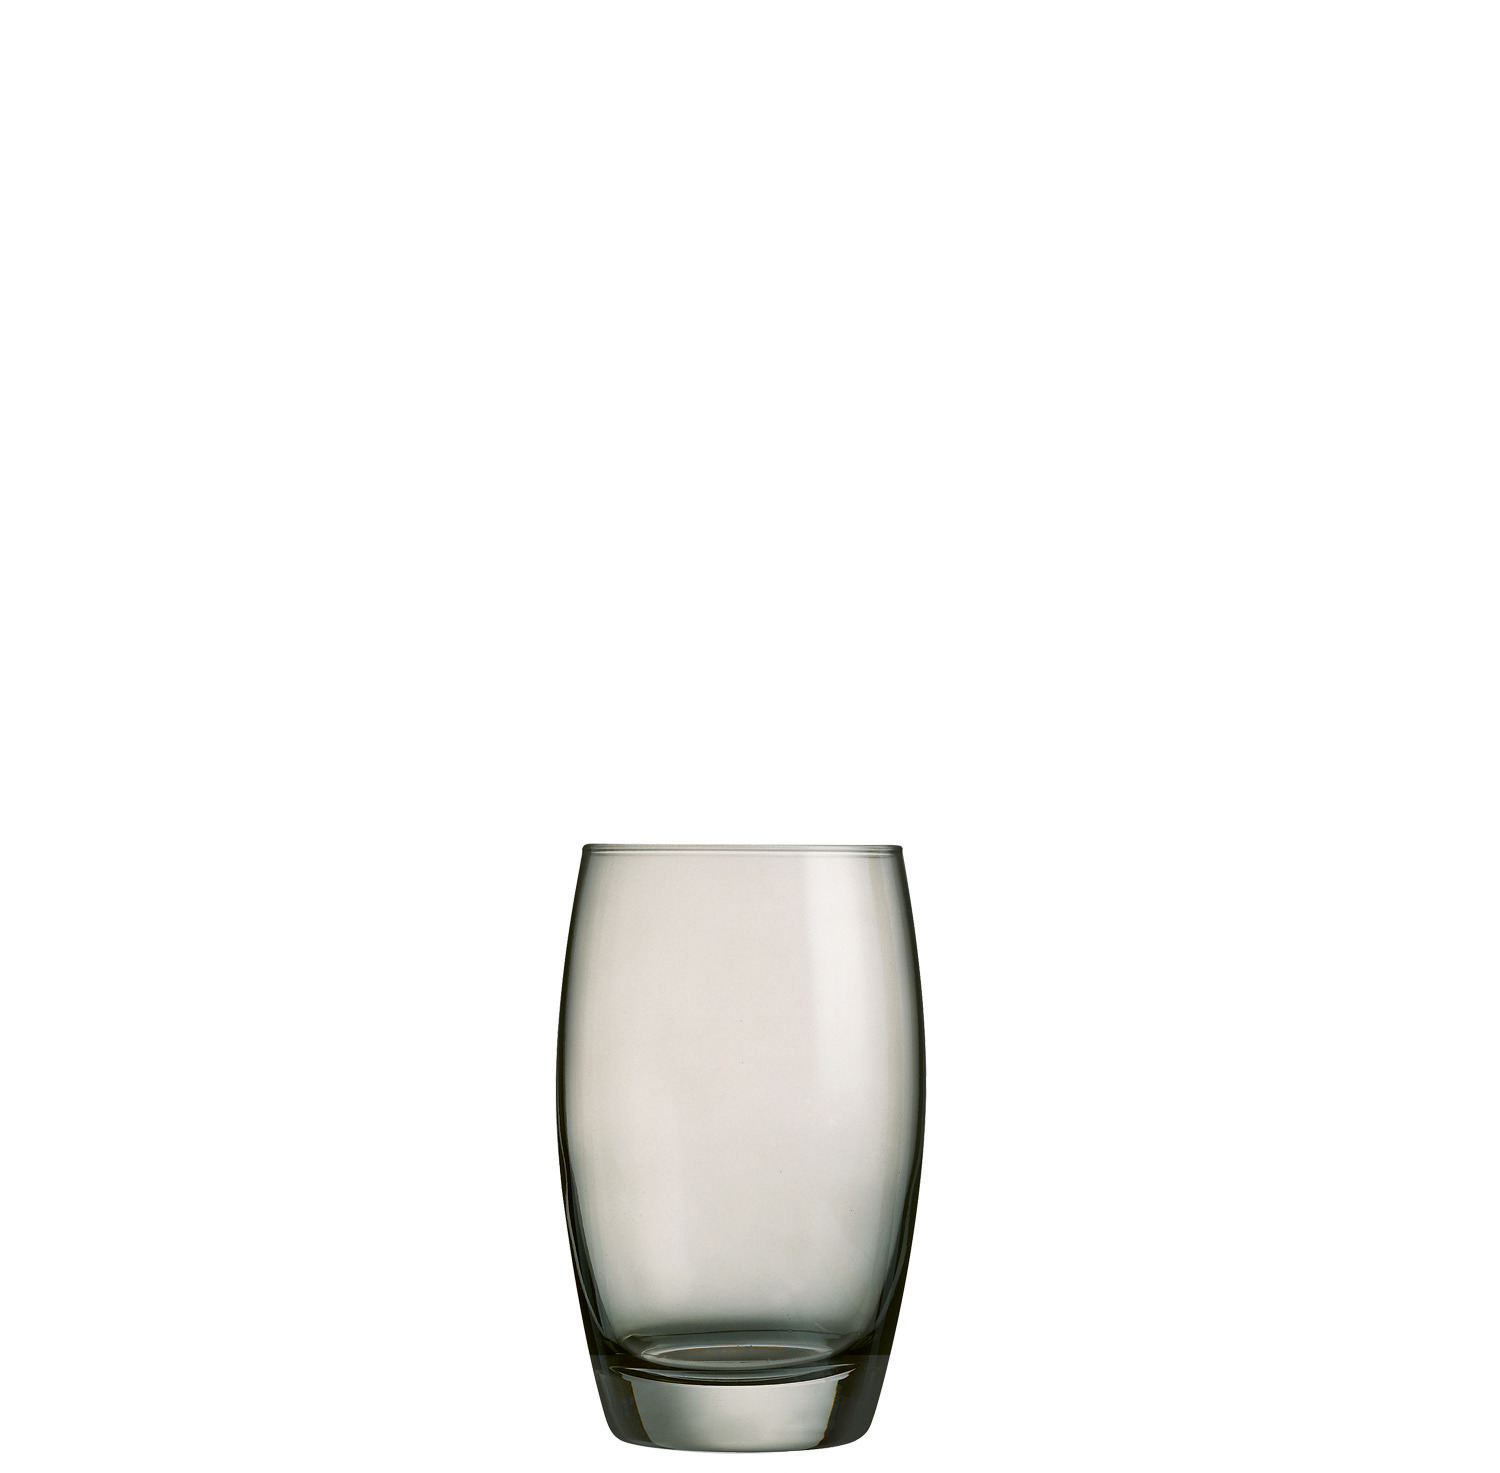 Longdrinkglas 76 mm / 0,35 l transparent + grau besprüht